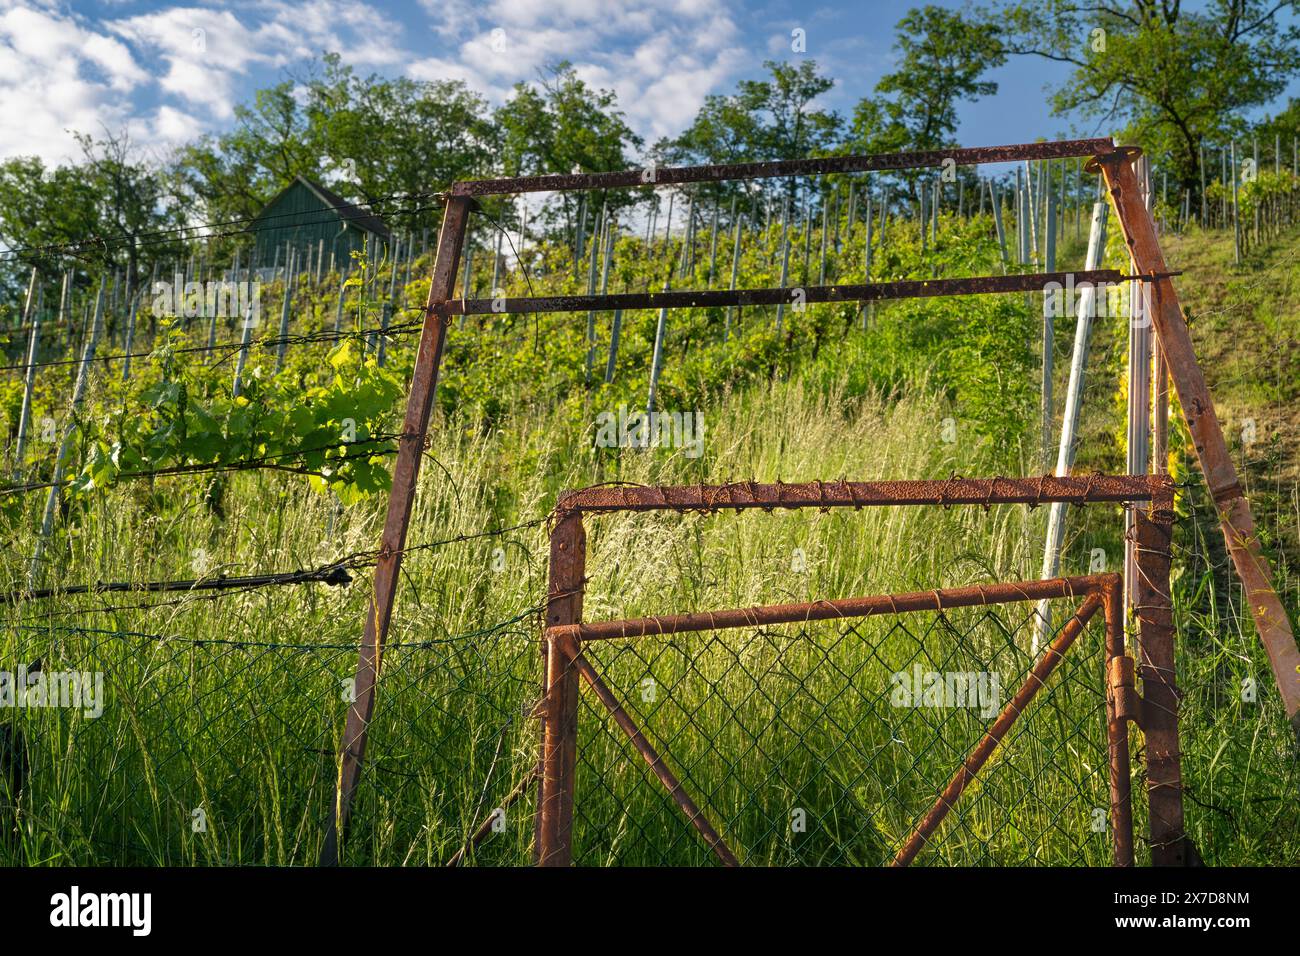 Rostiges Metalltor auf einem Weinberg im Frühjahr - aufgenommen in der Nähe von Stuttgart. Stockfoto